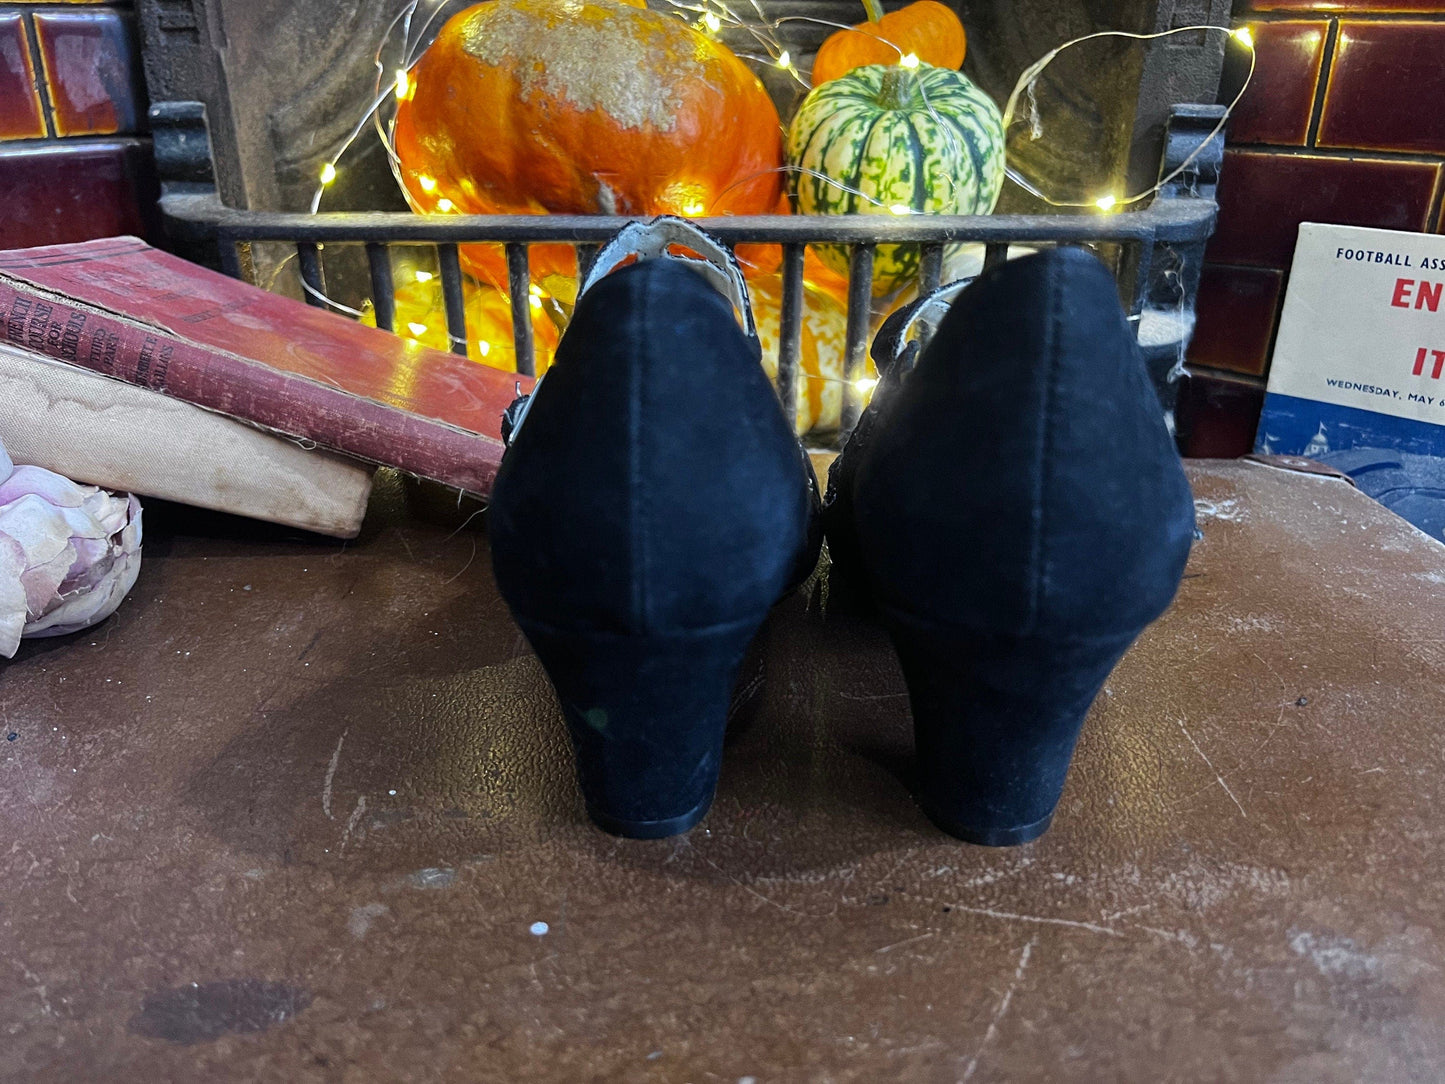 1950s style Vintage Aris Allen Dance shoes Black Suede Crochet UK 6 - Vintage Mary Jane - Vintage Dance Shoes, repro dance shoes 50s